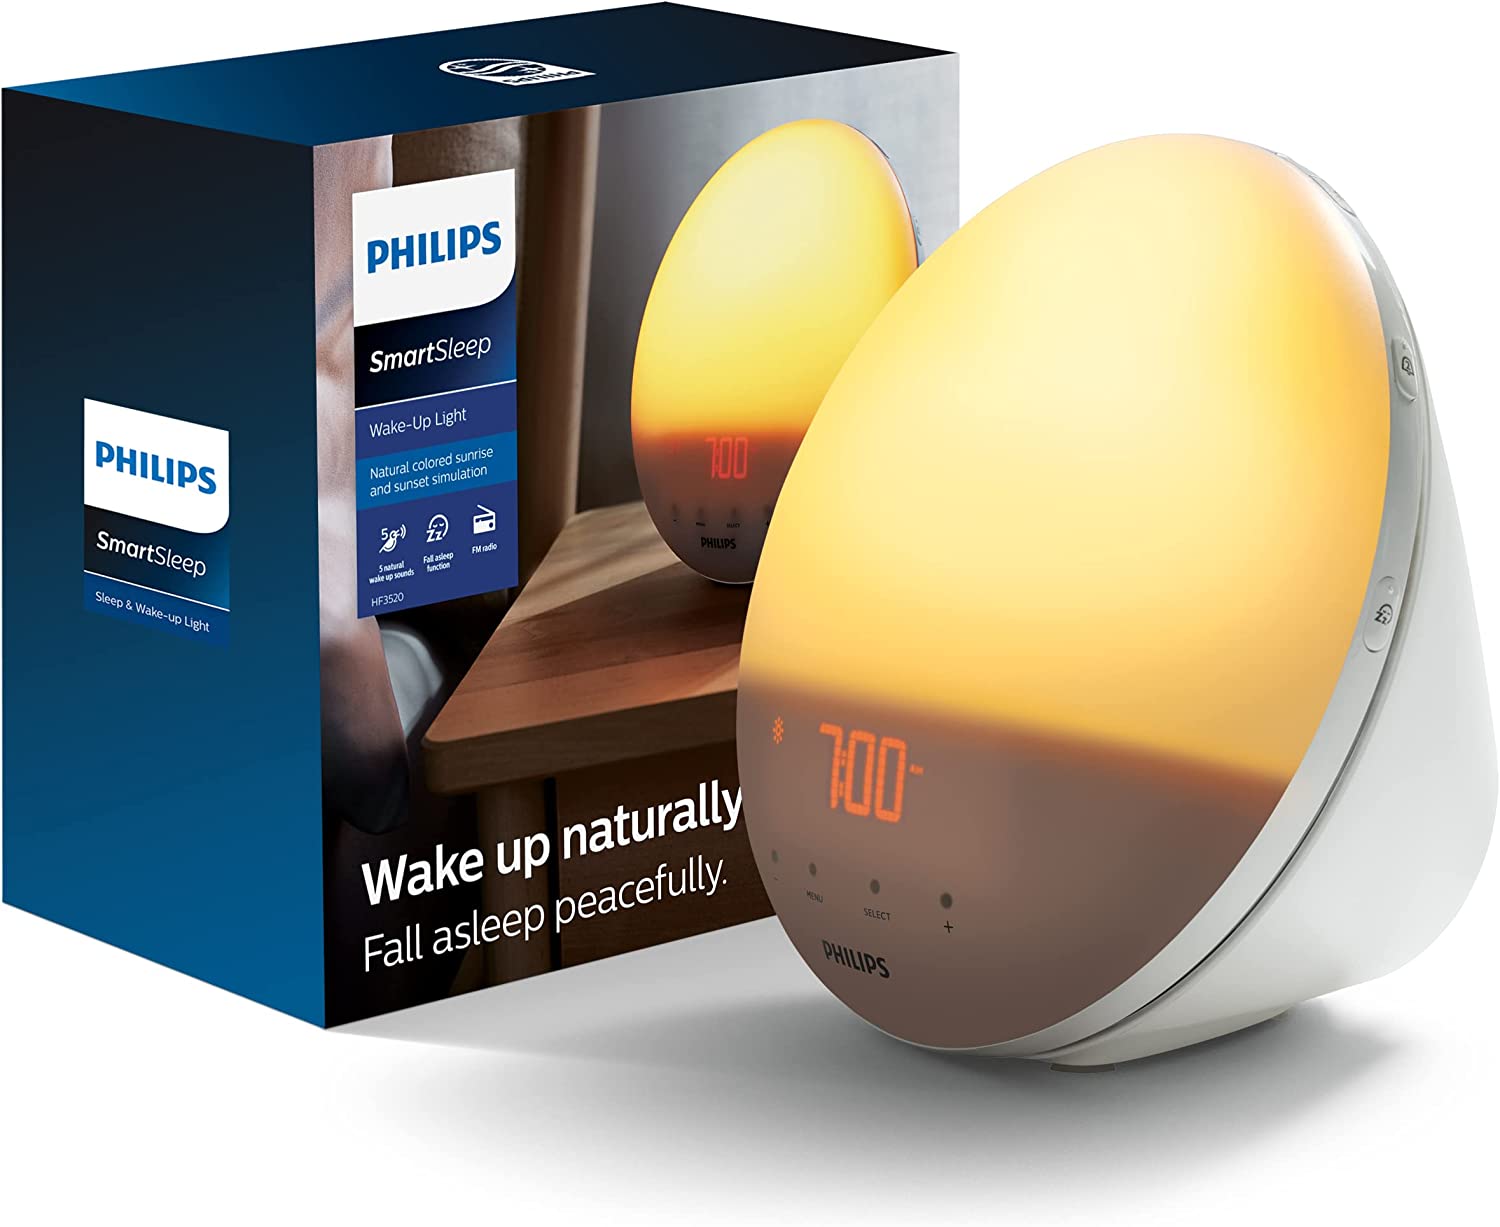 Philips alarm clock